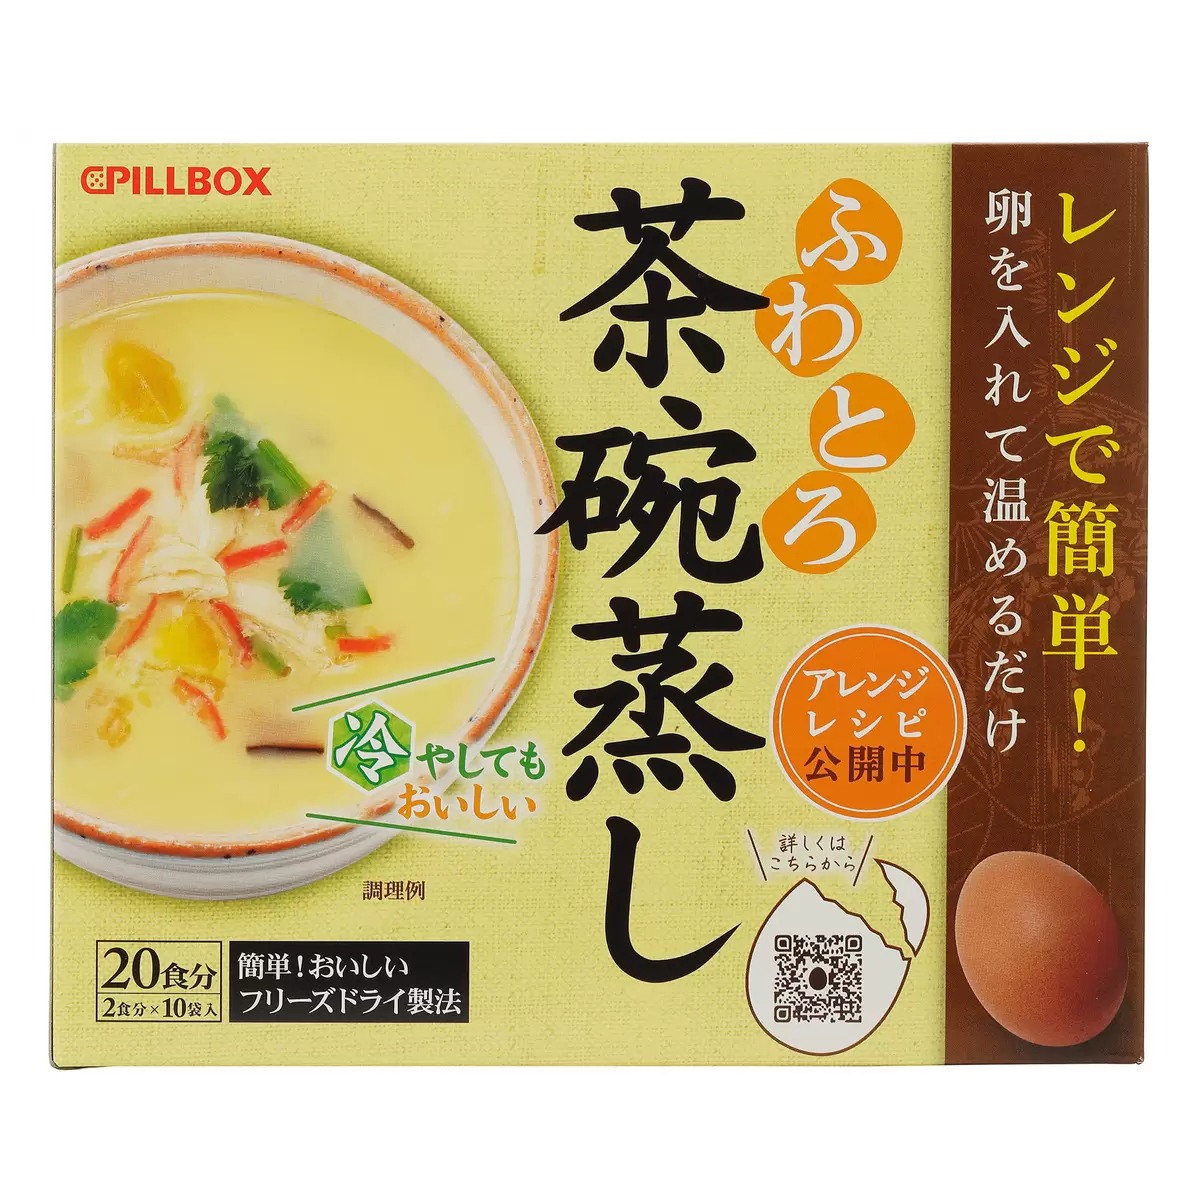 Pillbox 日式頂級茶碗蒸調理包